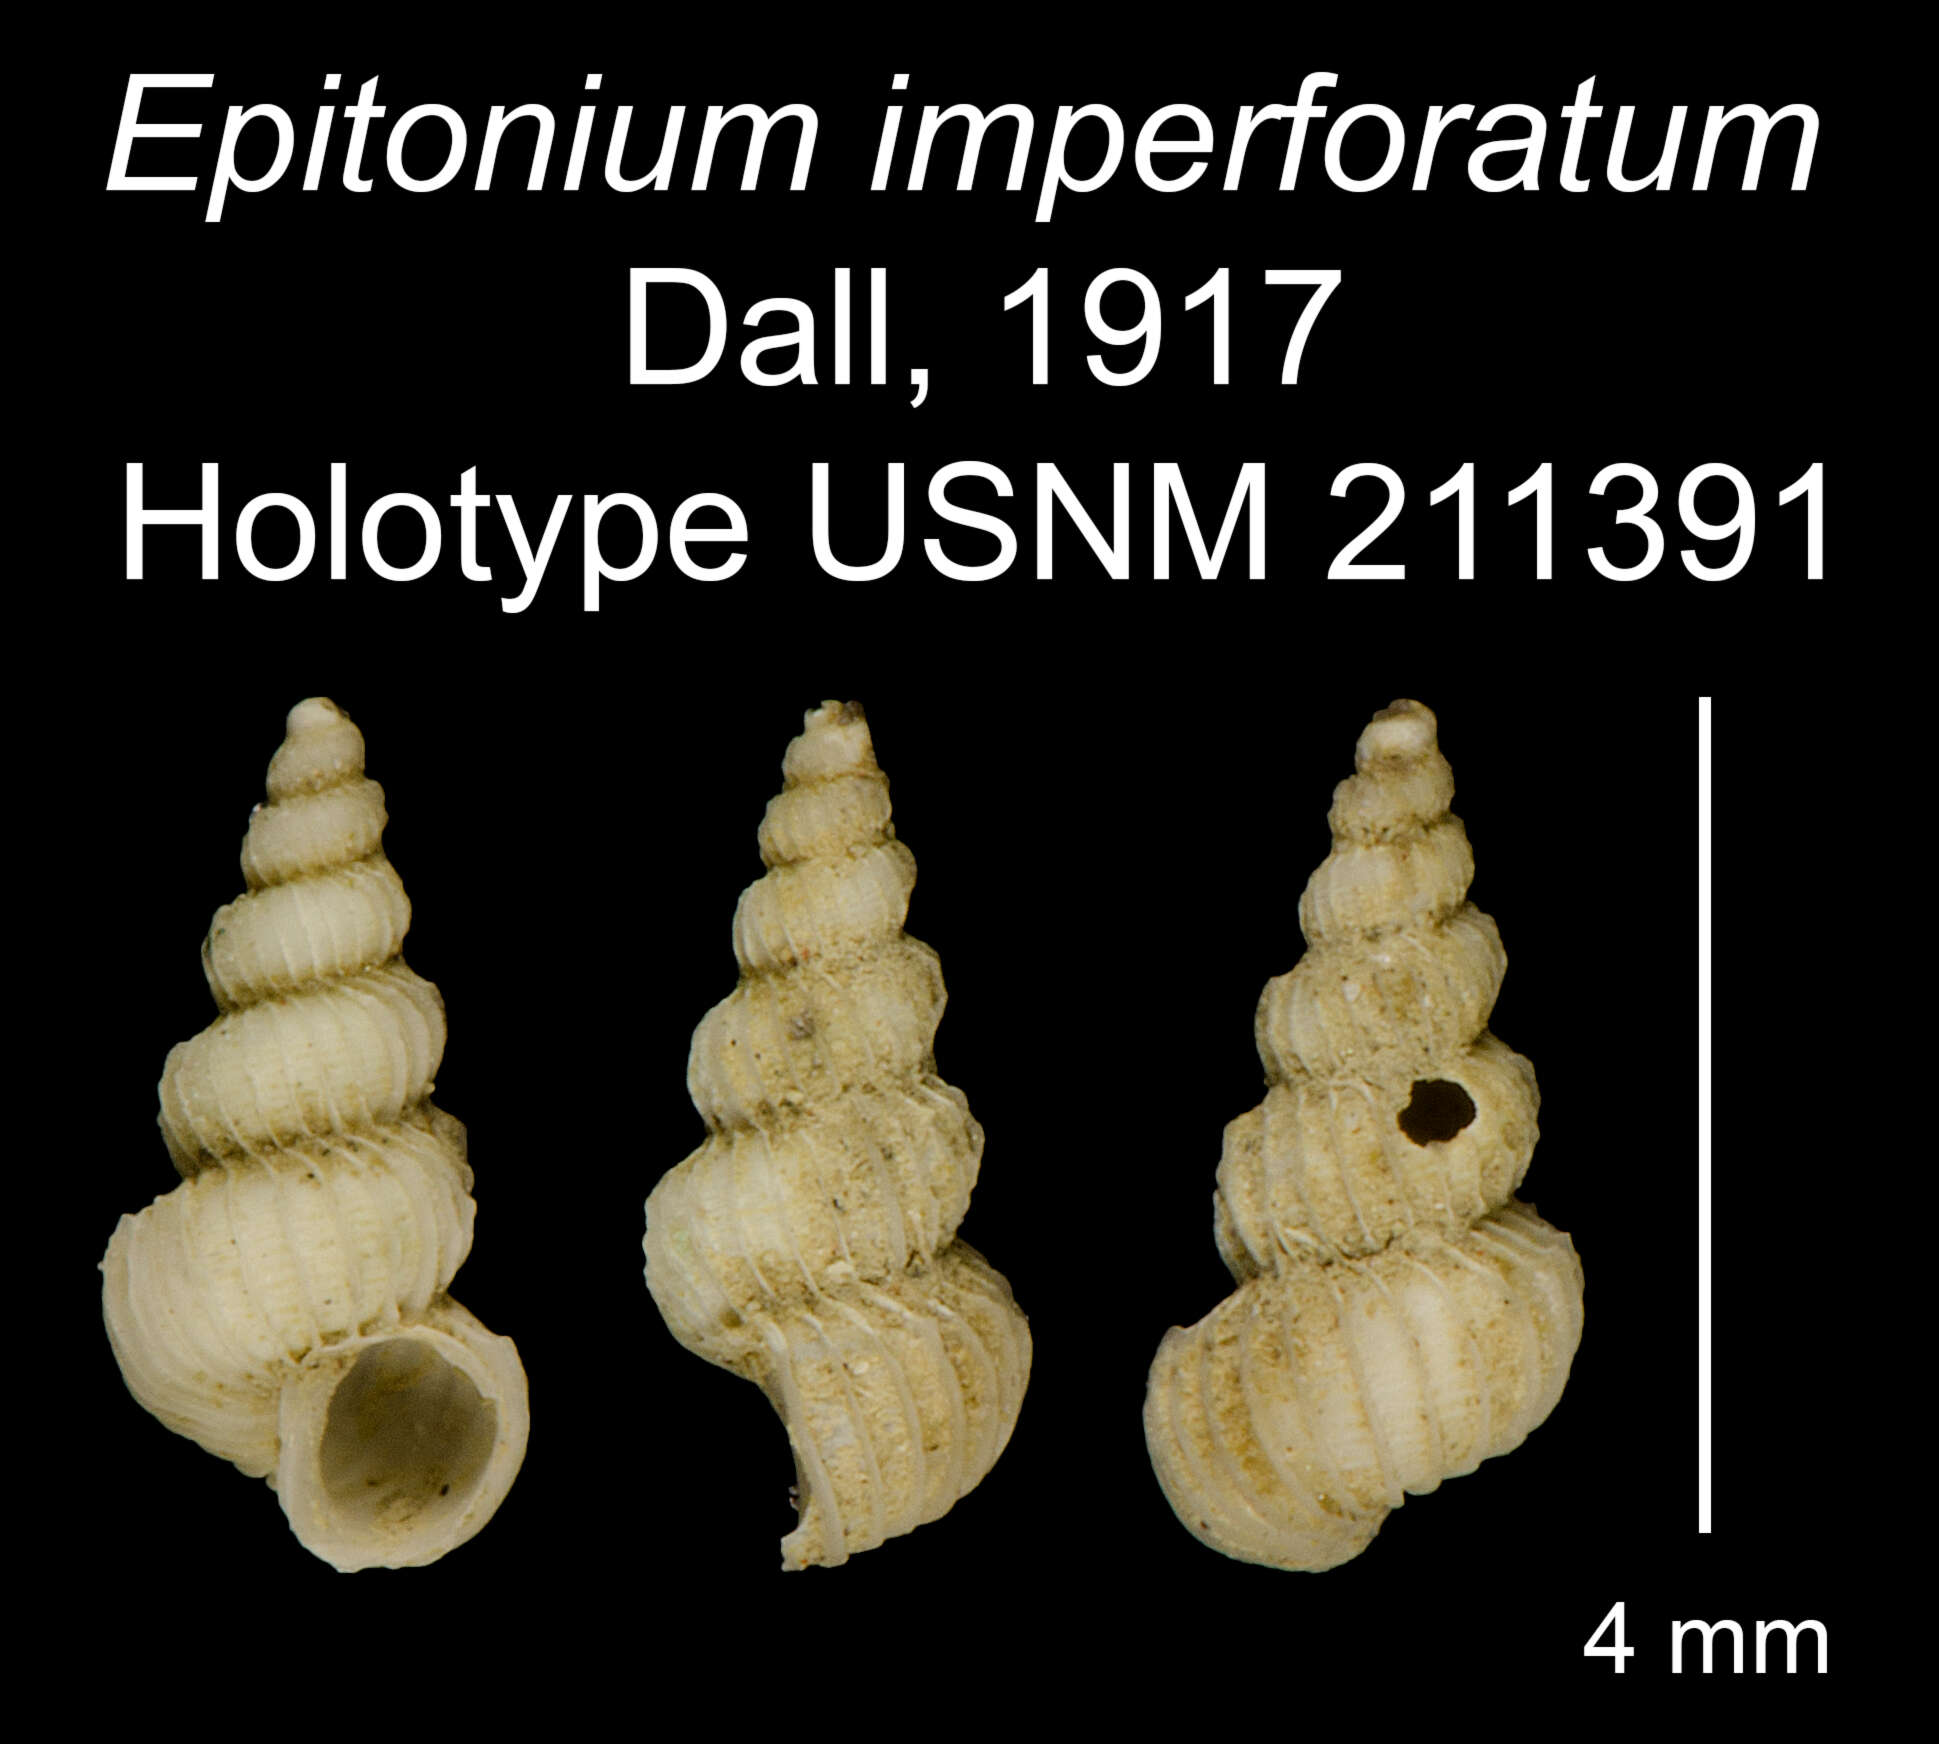 Image of Epitonium imperforatum Dall 1917